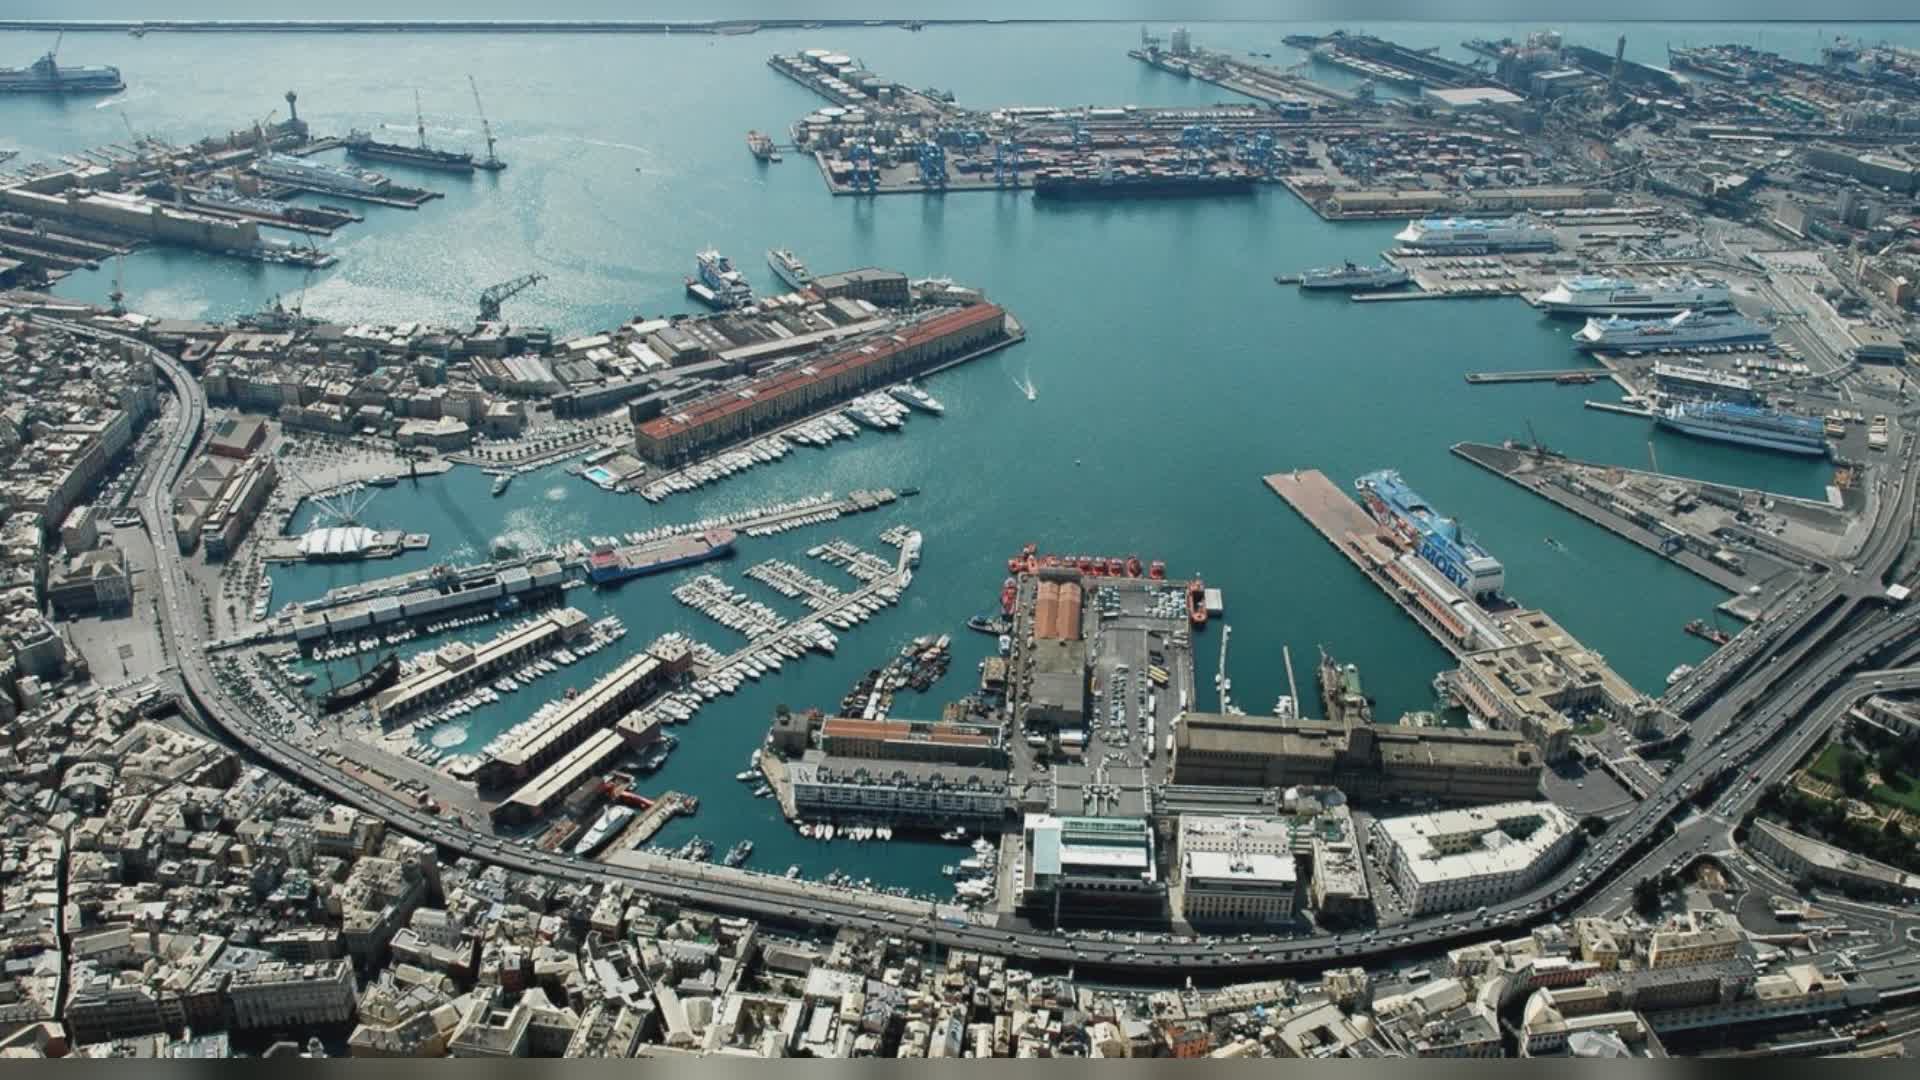 Porto di Genova: ente bacini si conferma realtà sostenibile che diminuisce l'impatto delle attività lavorative sull'ambiente e sulla città